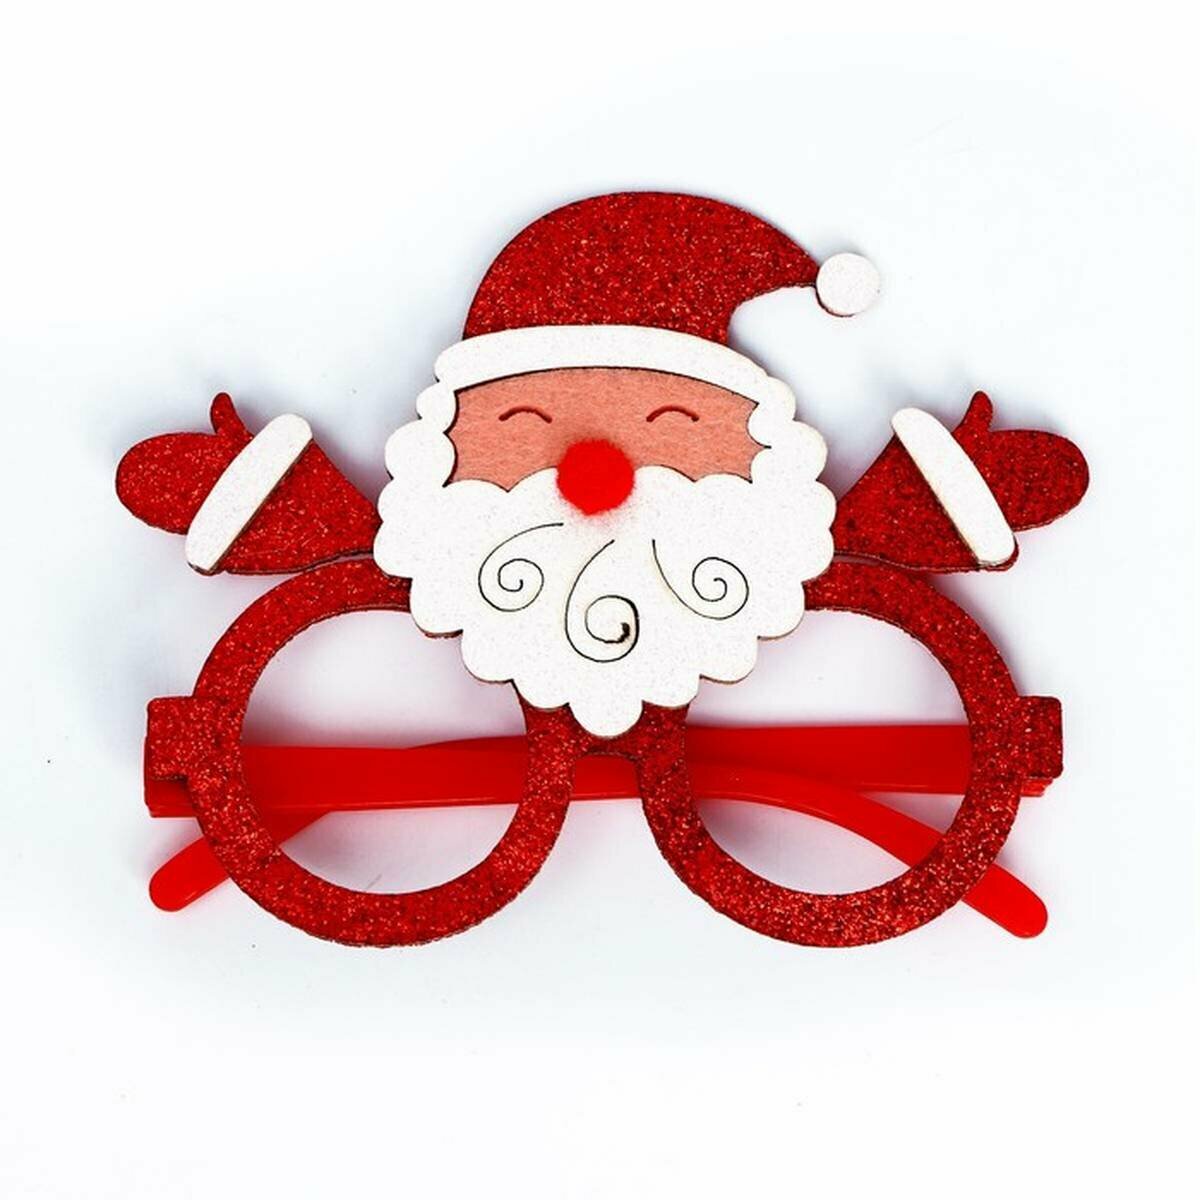 Очки карнавальные - Дед Мороз, пластиковые, цвет красно-белый, 1 шт.